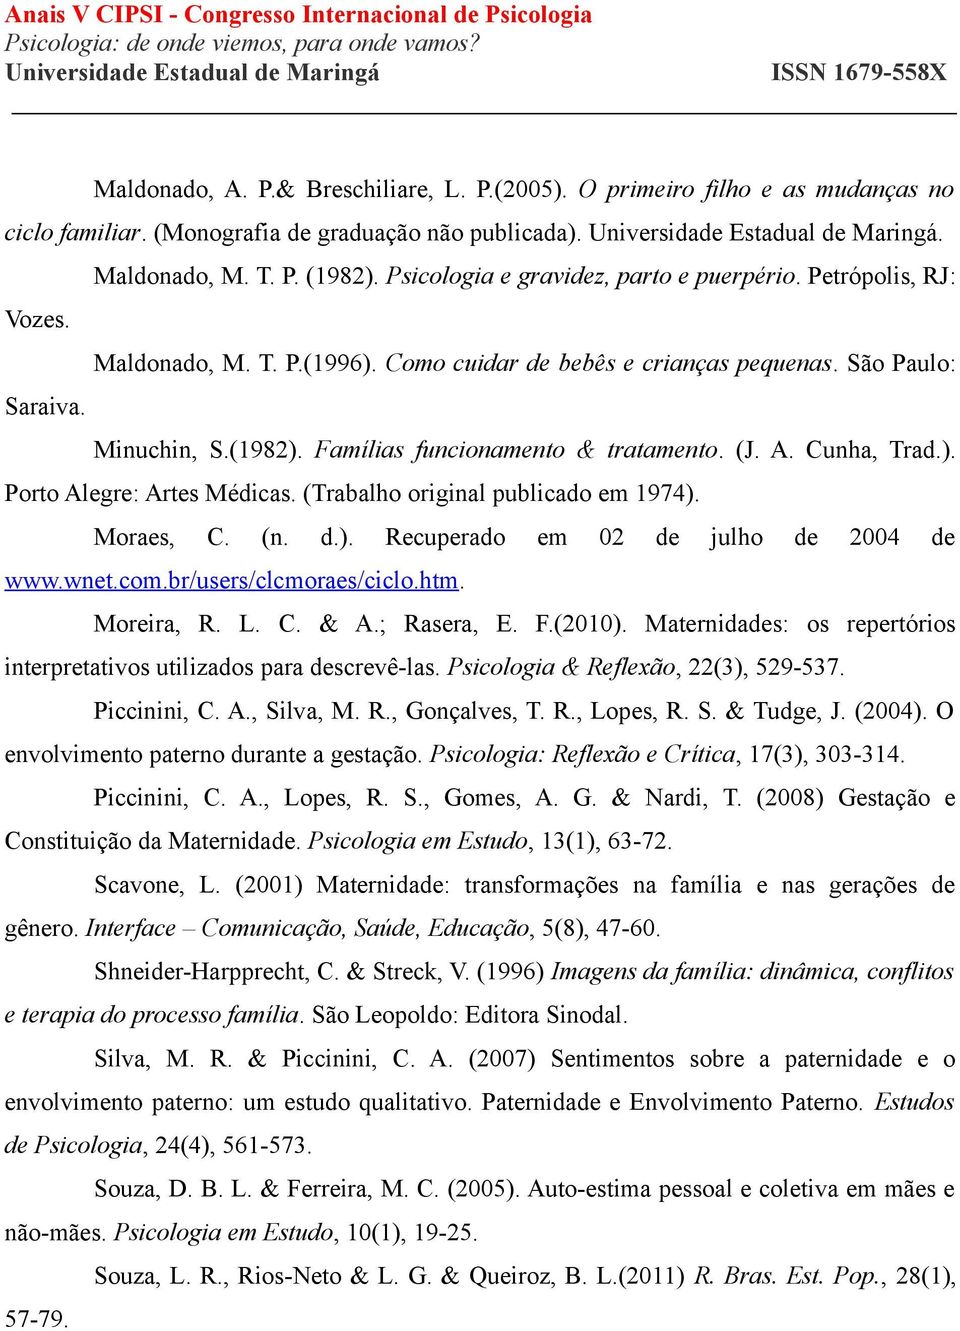 Famílias funcionamento & tratamento. (J. A. Cunha, Trad.). Porto Alegre: Artes Médicas. (Trabalho original publicado em 1974). Moraes, C. (n. d.). Recuperado em 02 de julho de 2004 de www.wnet.com.